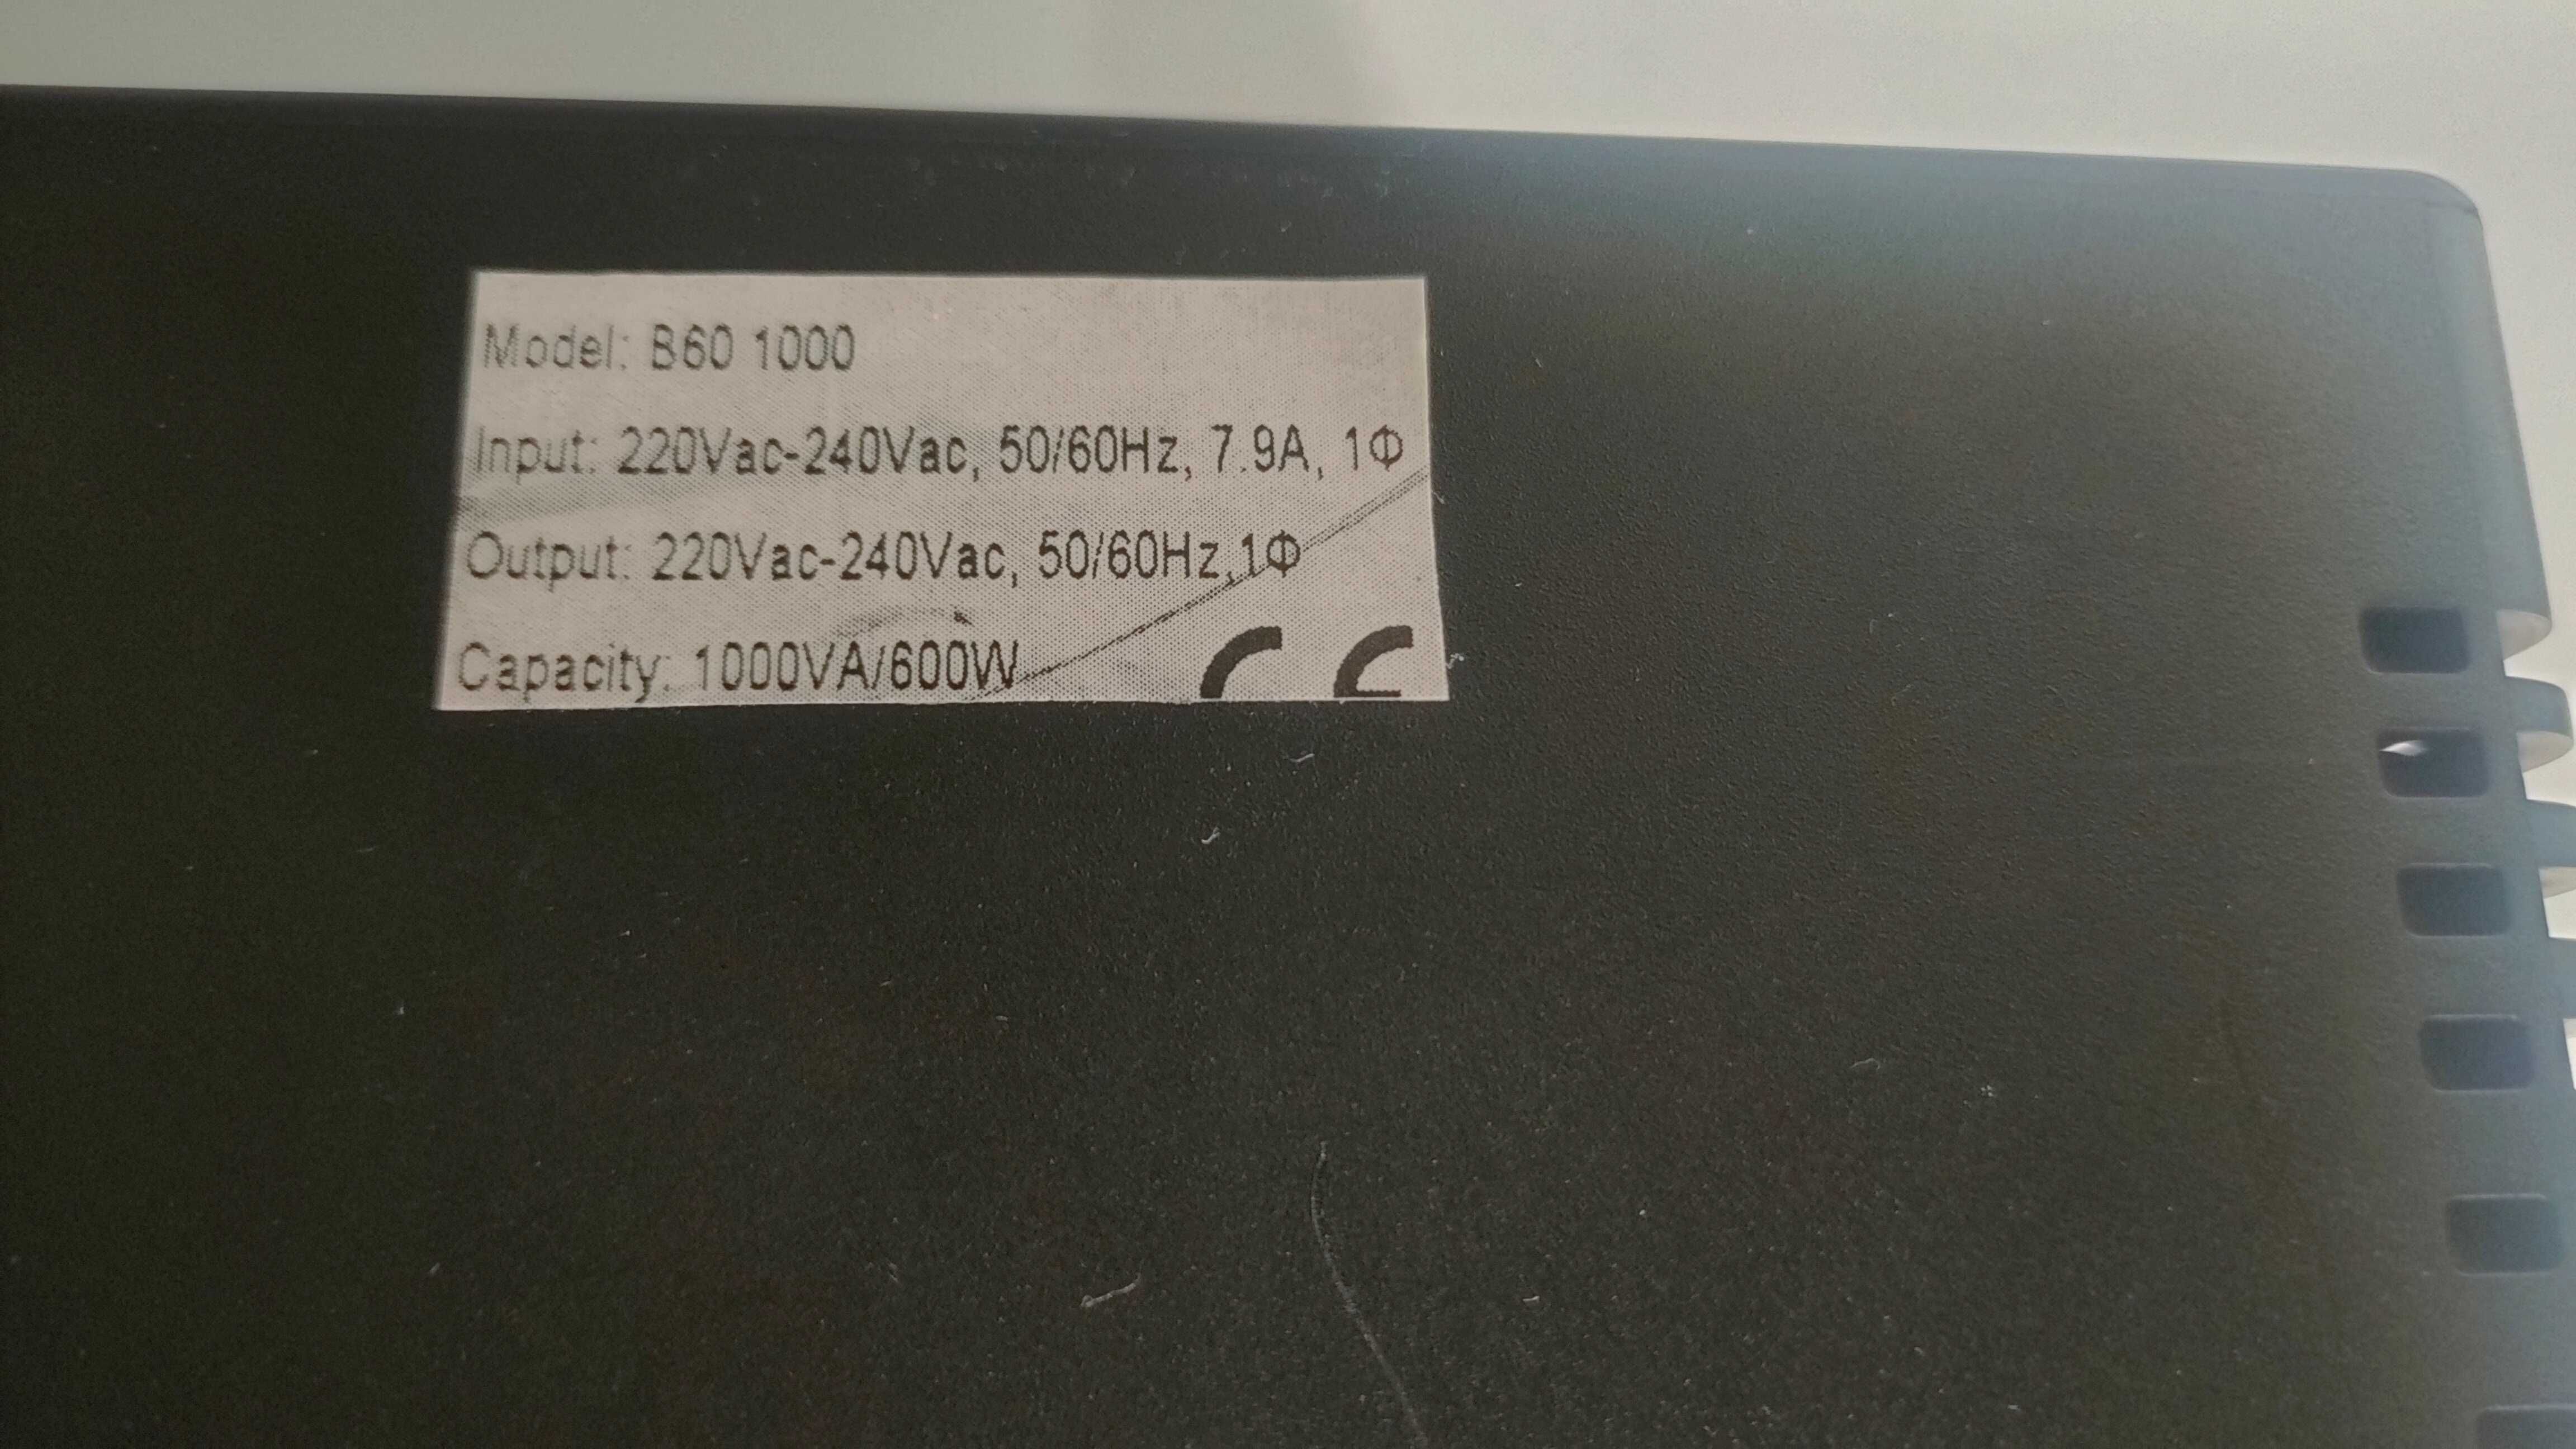 UPS Borri B60 1000, гаранция, цената е с вкл. ДДС